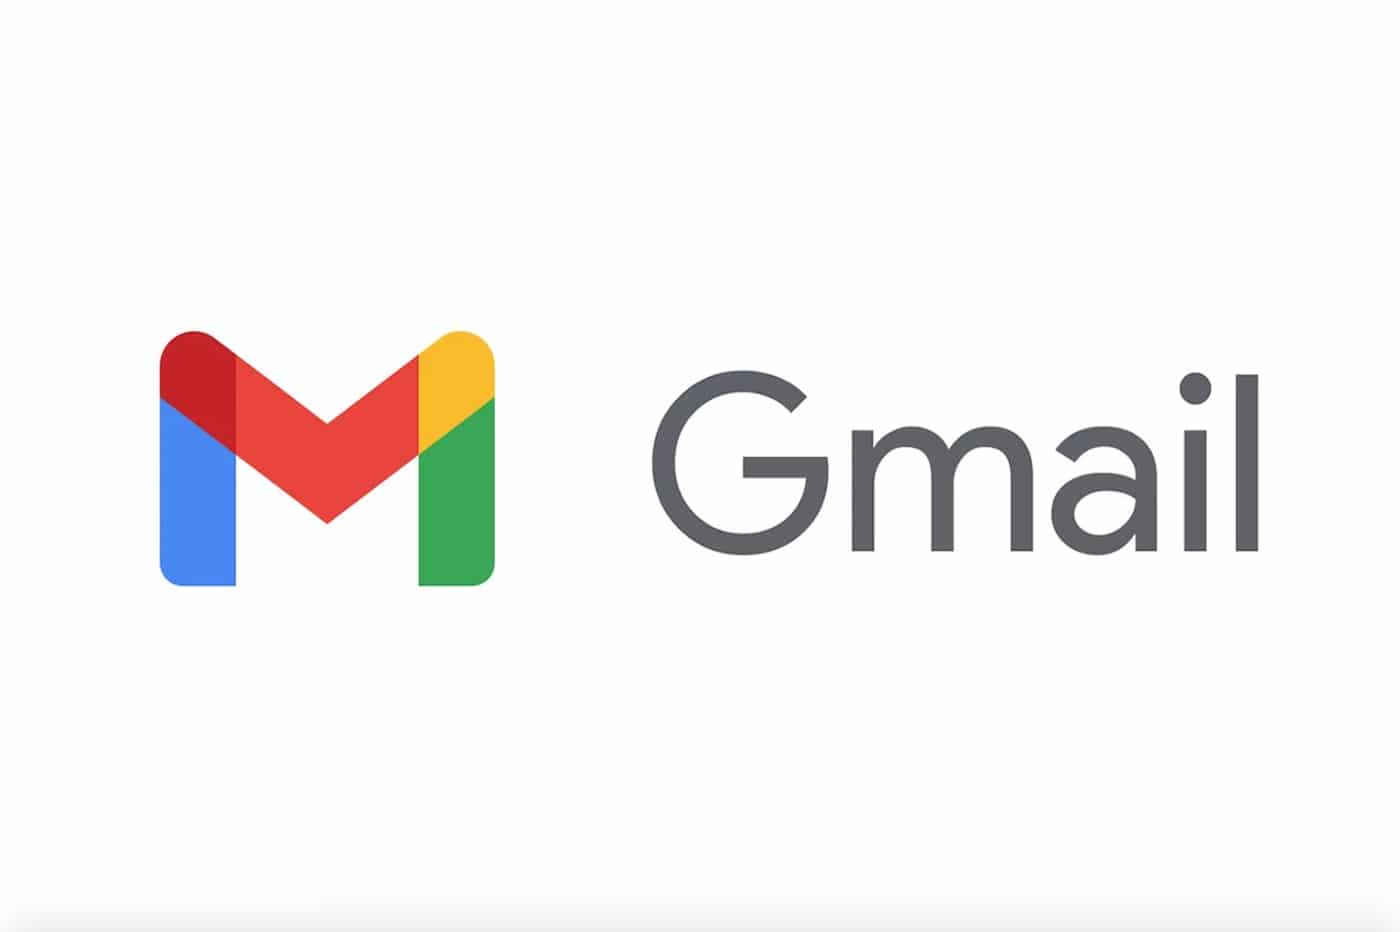 E-mails zoeken op een smartphone in Gmail wordt veel beter, maar het is niet zeker